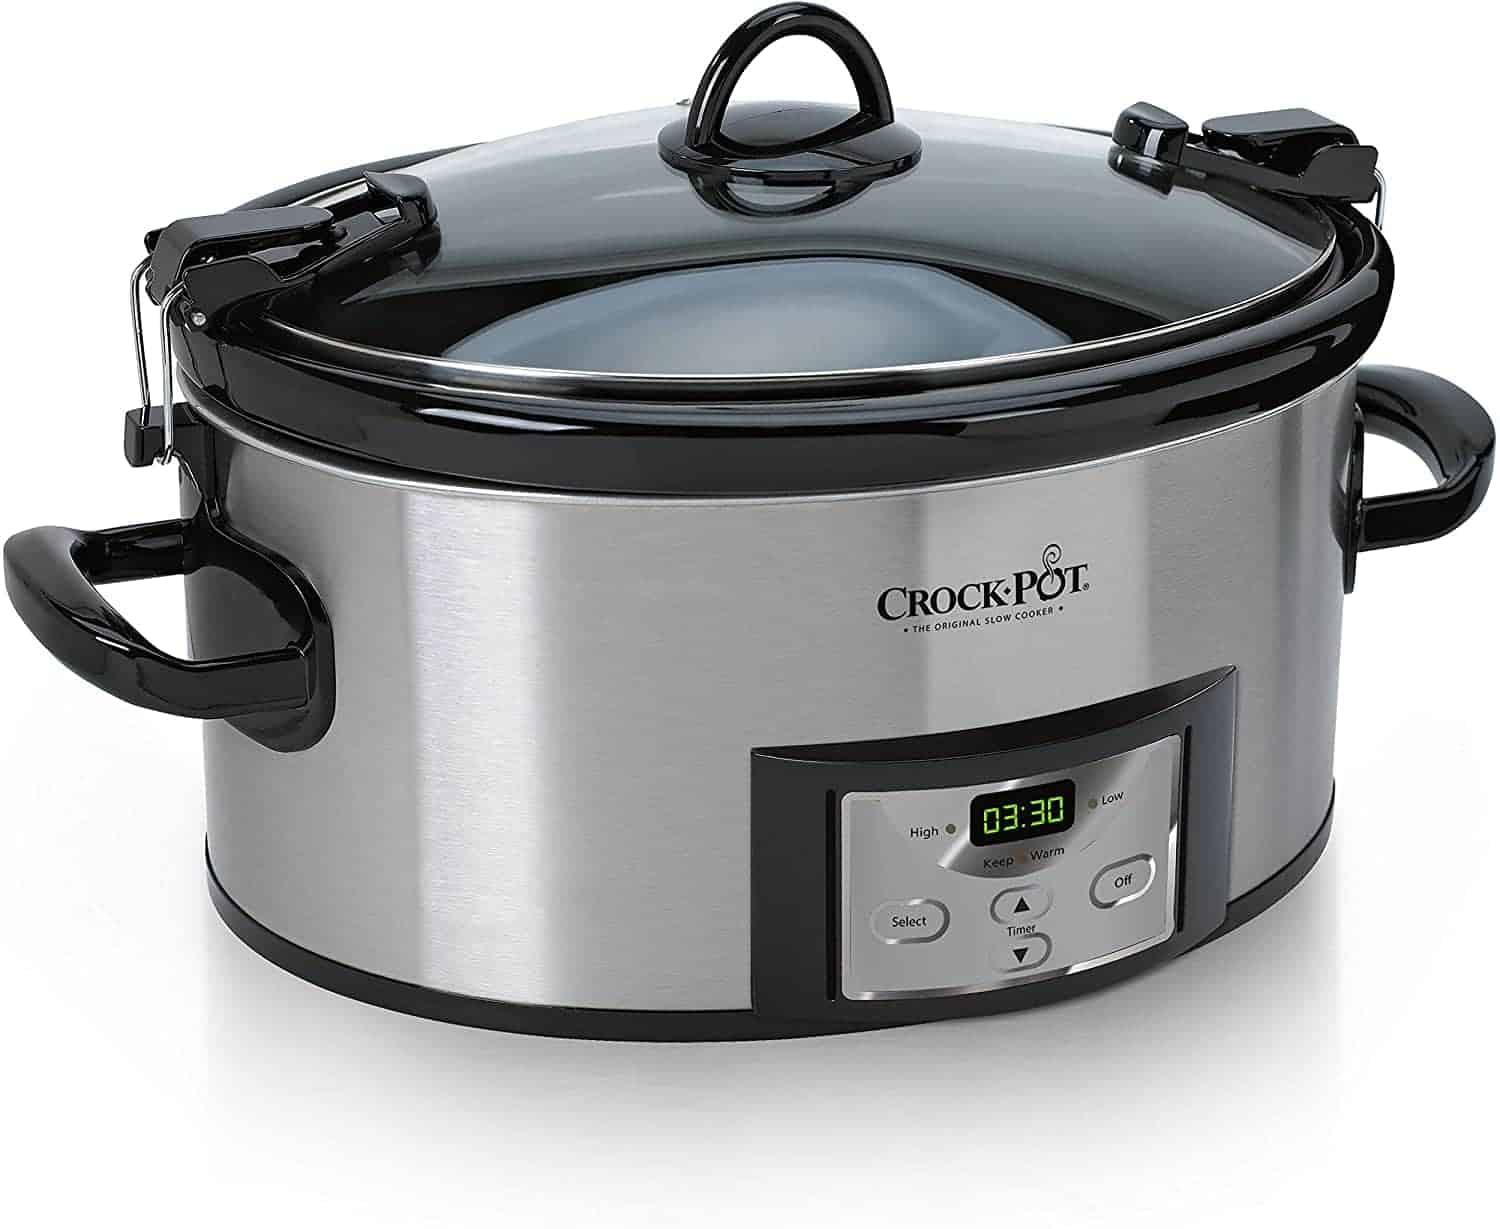 Crock Pot SCCPVL610 6-Quart Programmable Slow Cooker